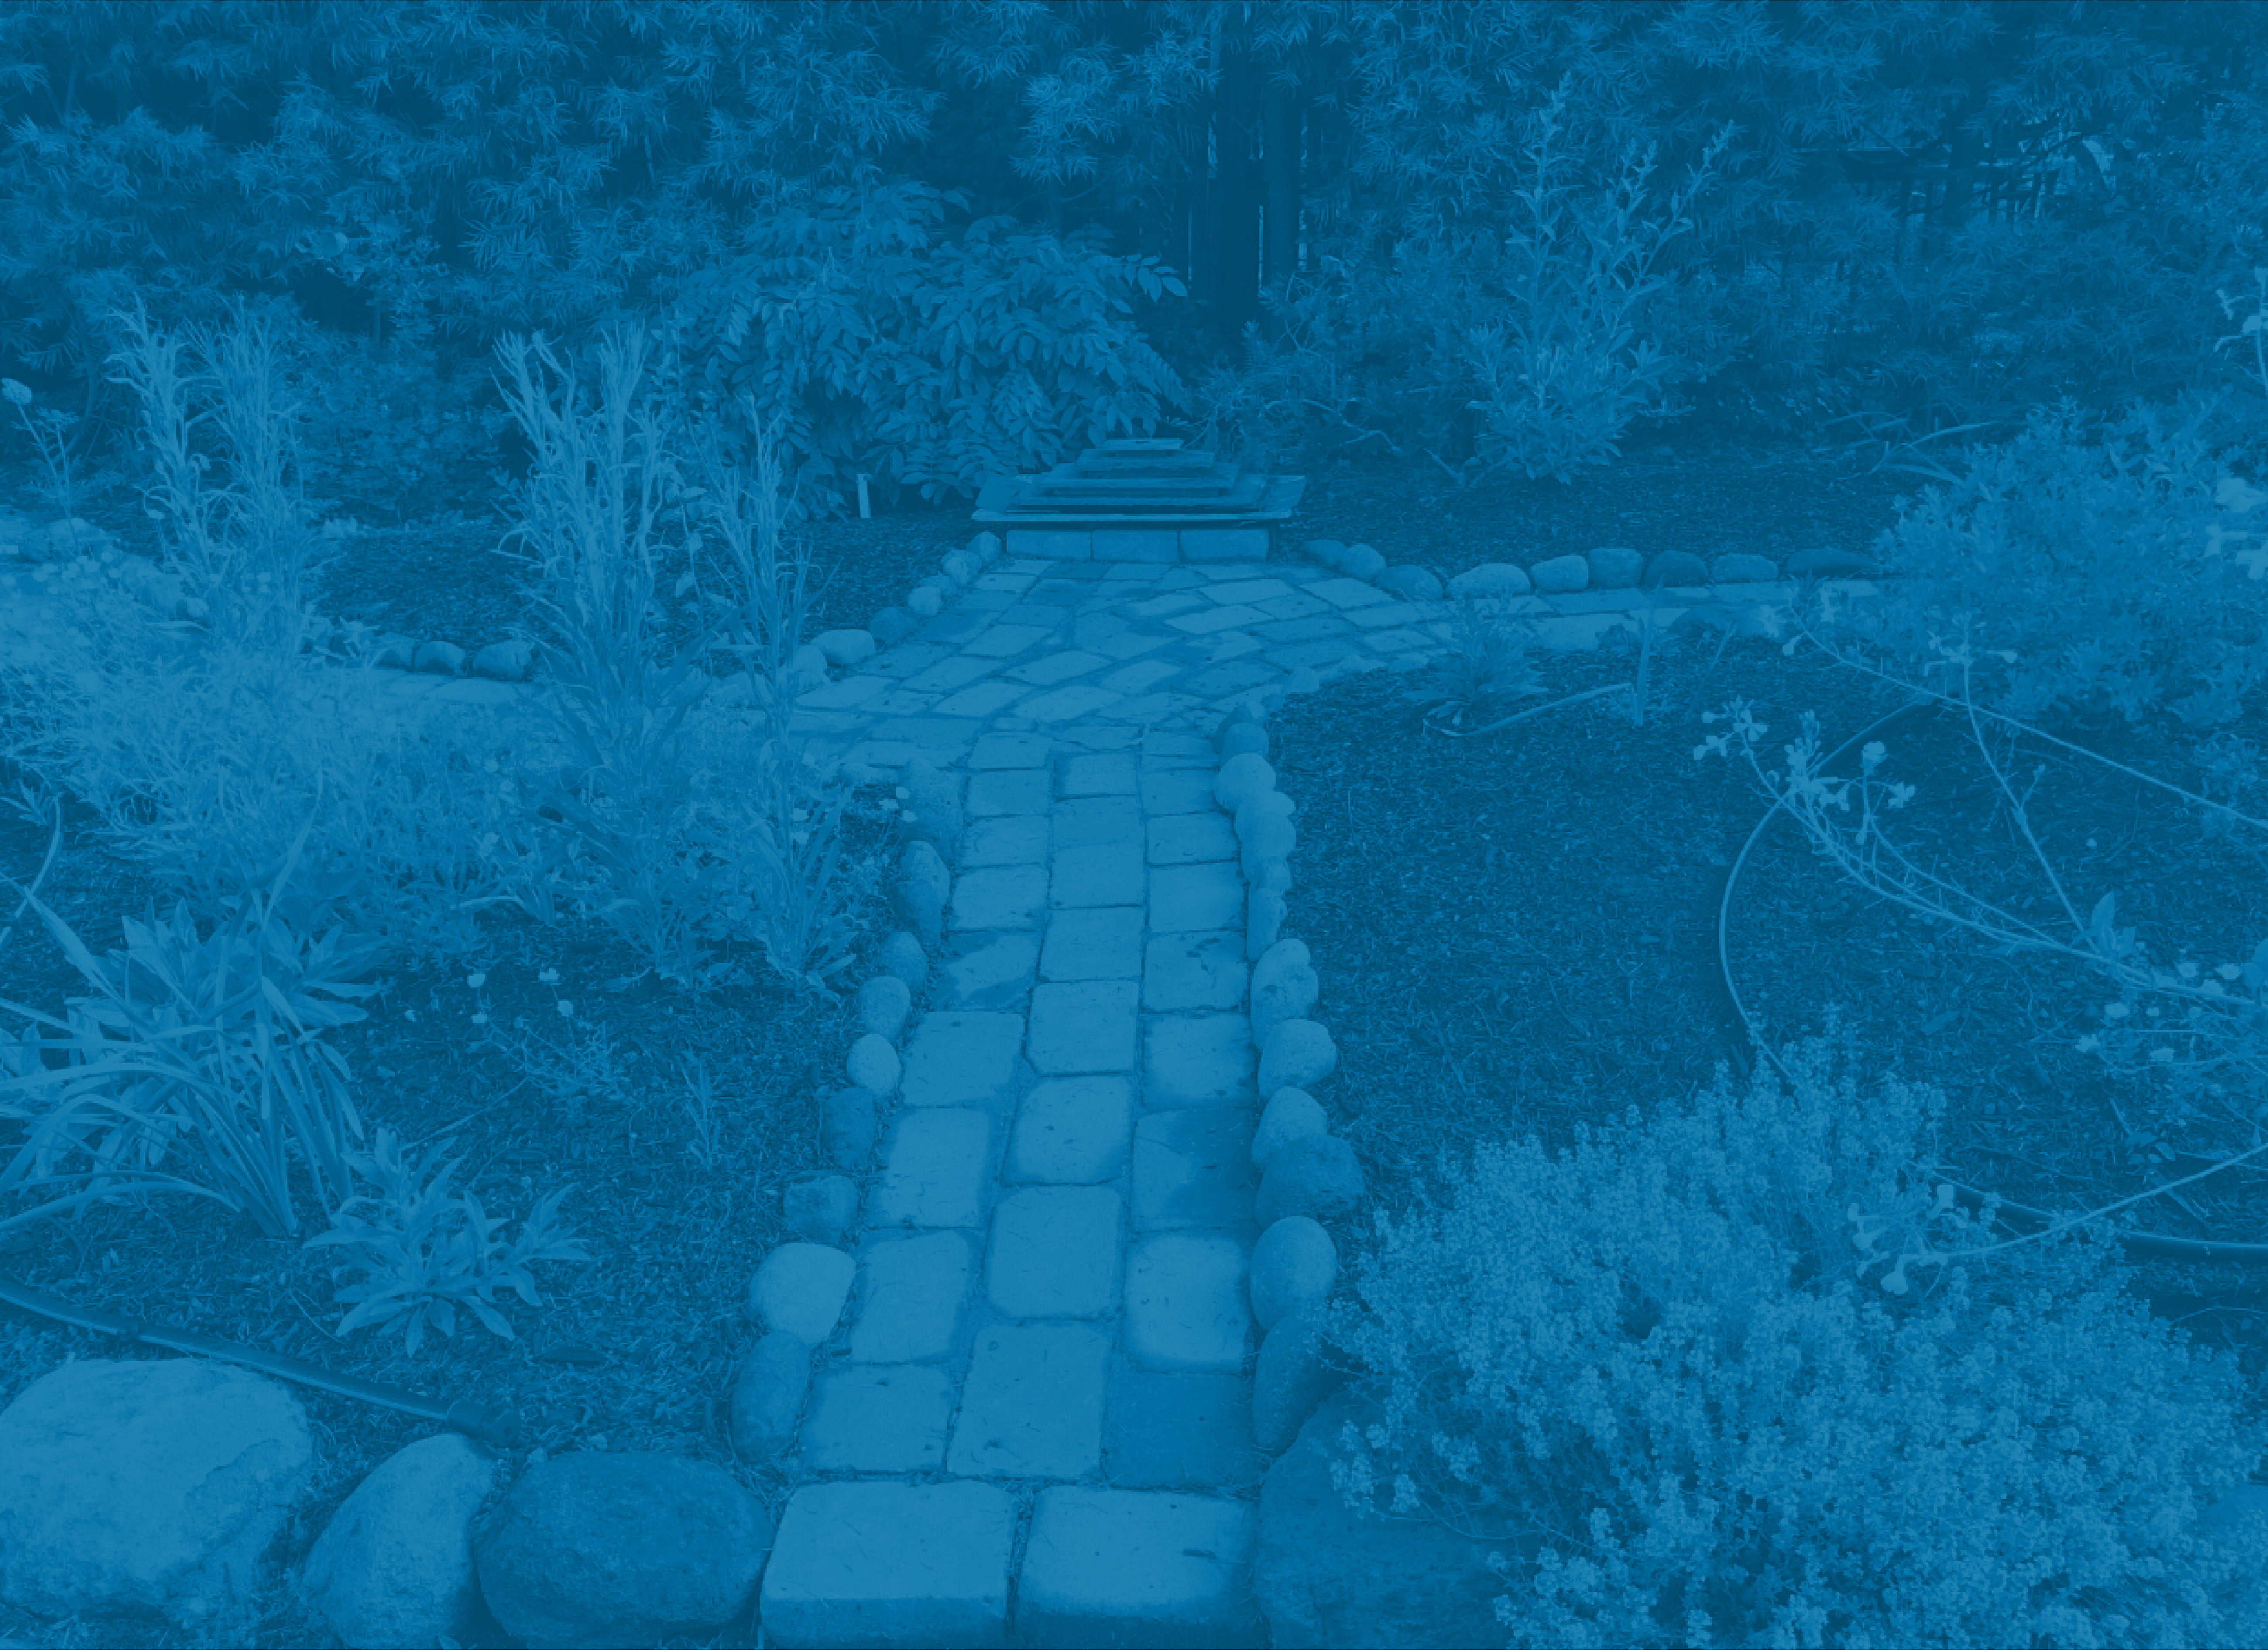 Button image showing a paved walkway runs through a home garden